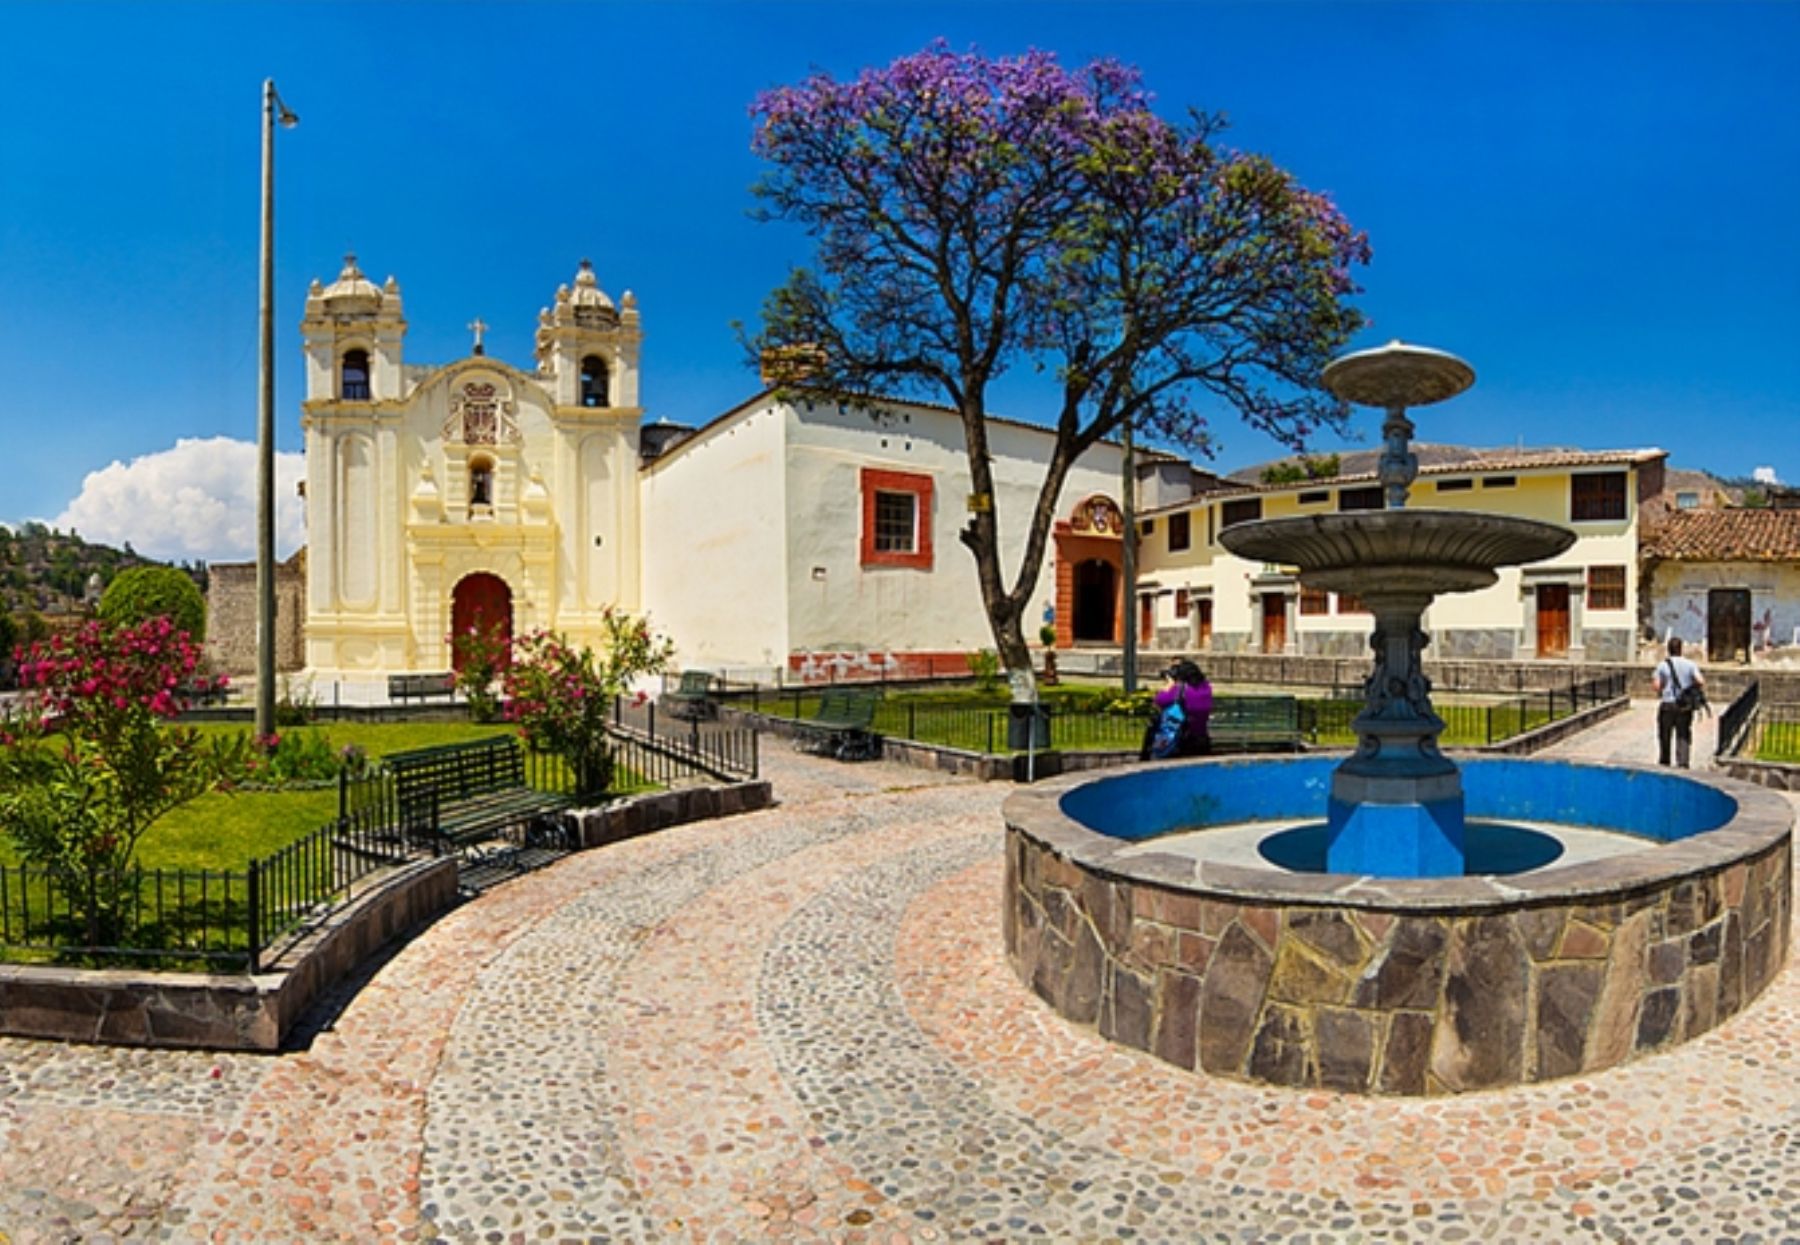 La ciudad de Ayacucho destaca por sus bellas iglesias, como el monasterio de Santa Teresa. ANDINA